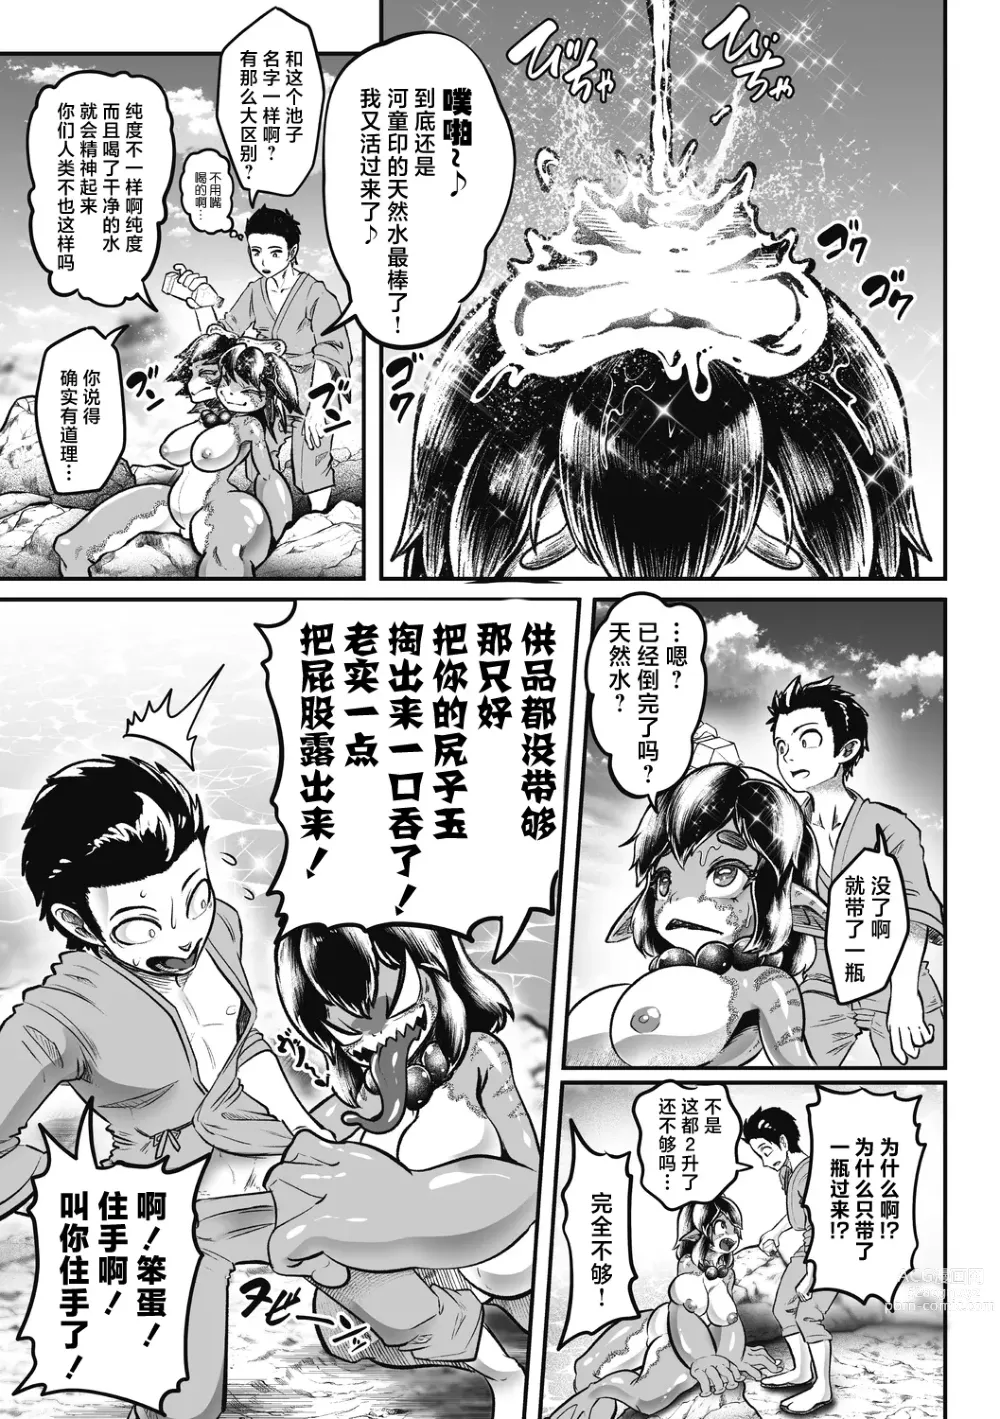 Page 4 of manga Natsu to Ame Tokidoki Uchiage Hanabi